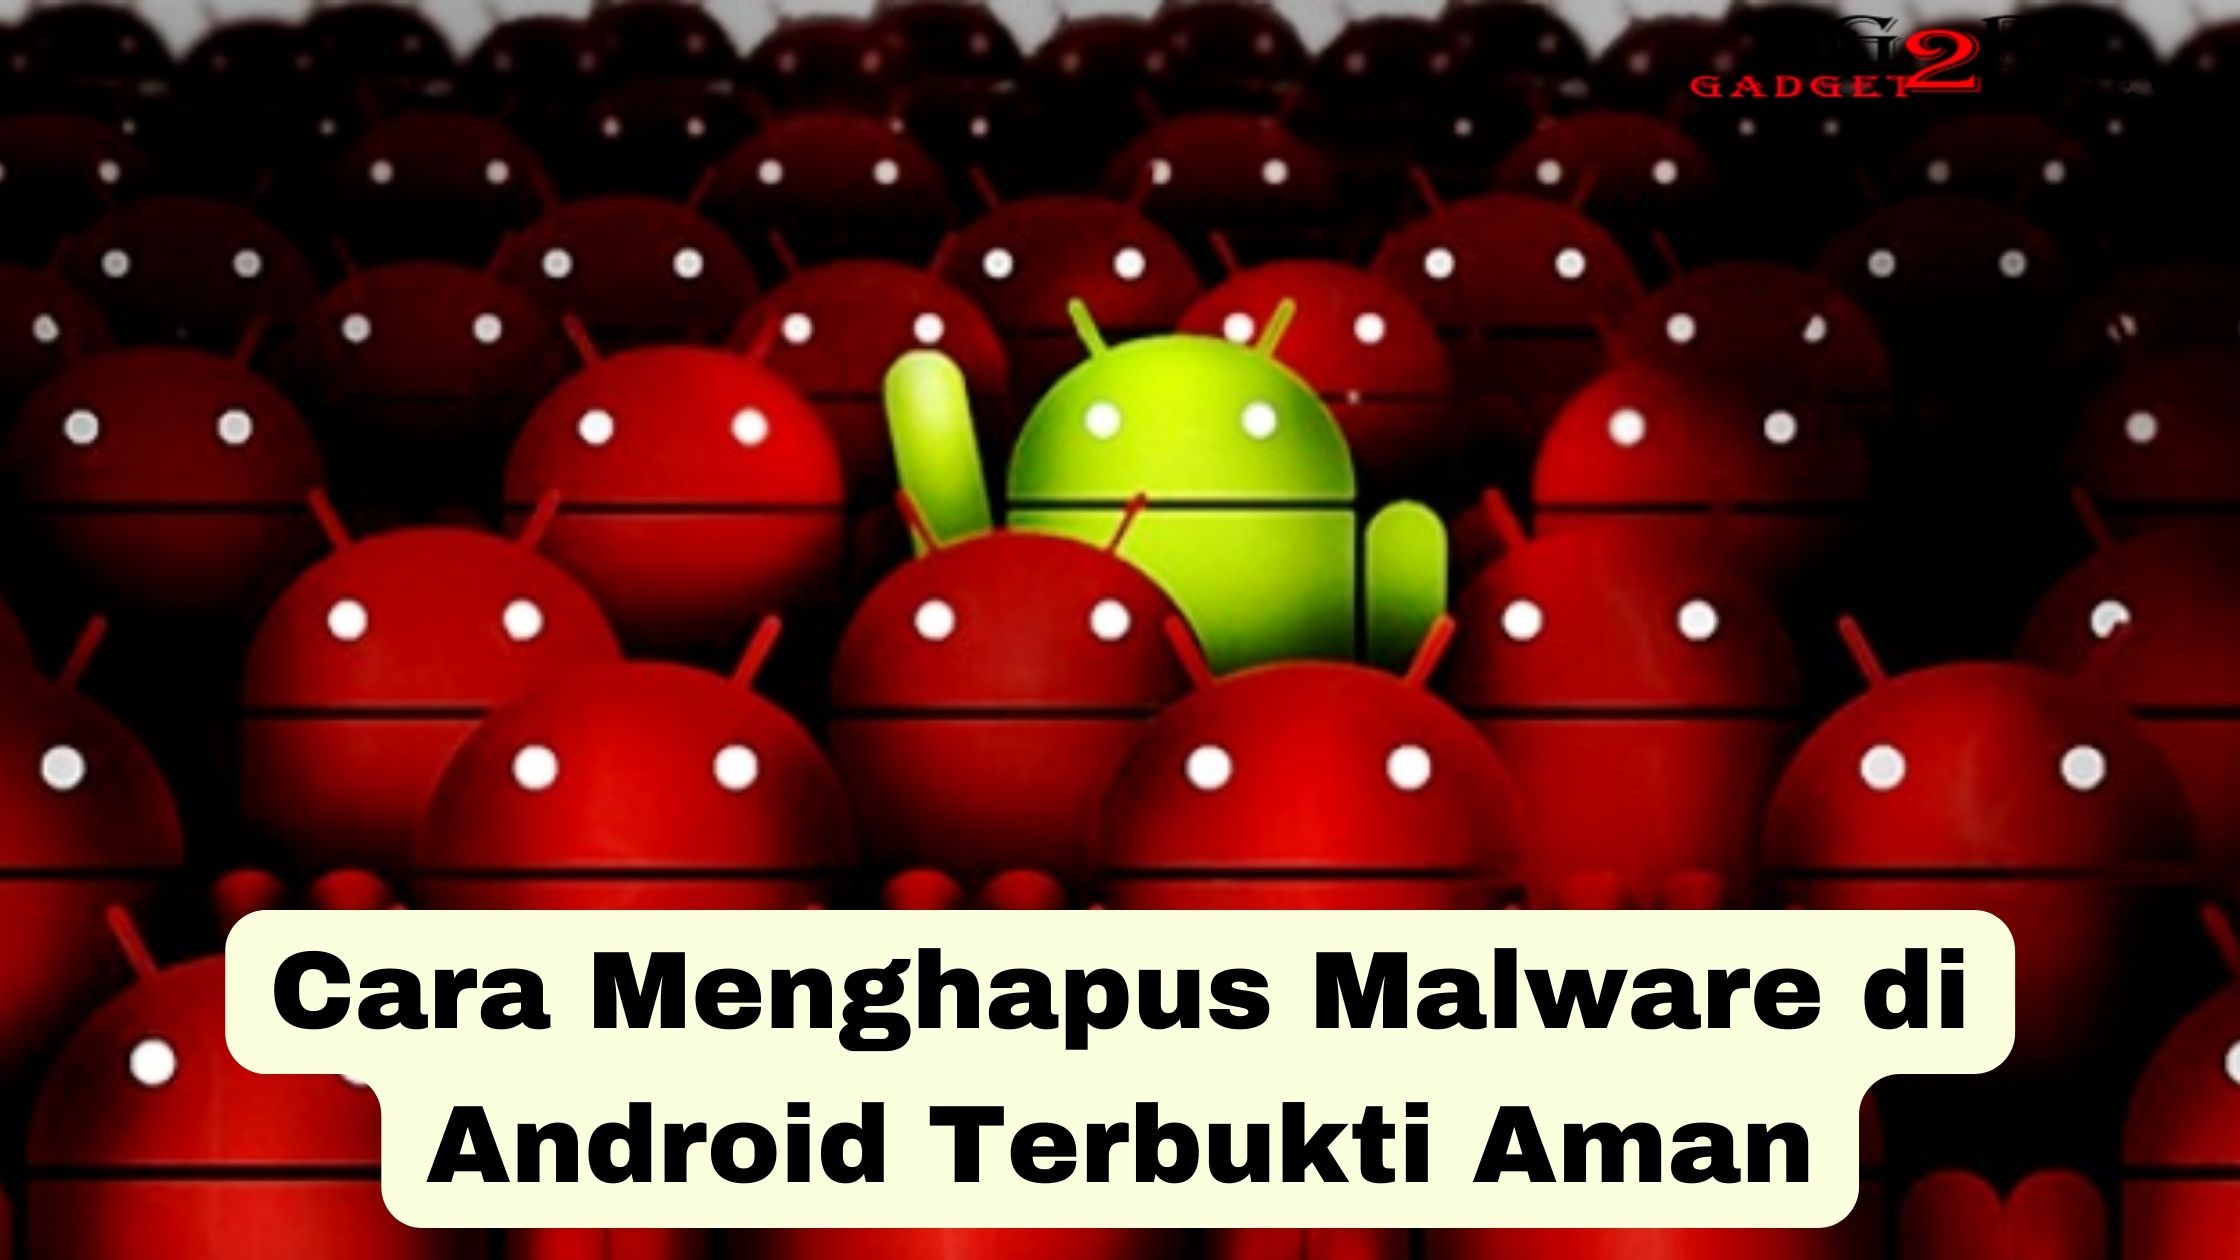 Cara Menghapus Malware di Android: Panduan Lengkap dan Terperinci